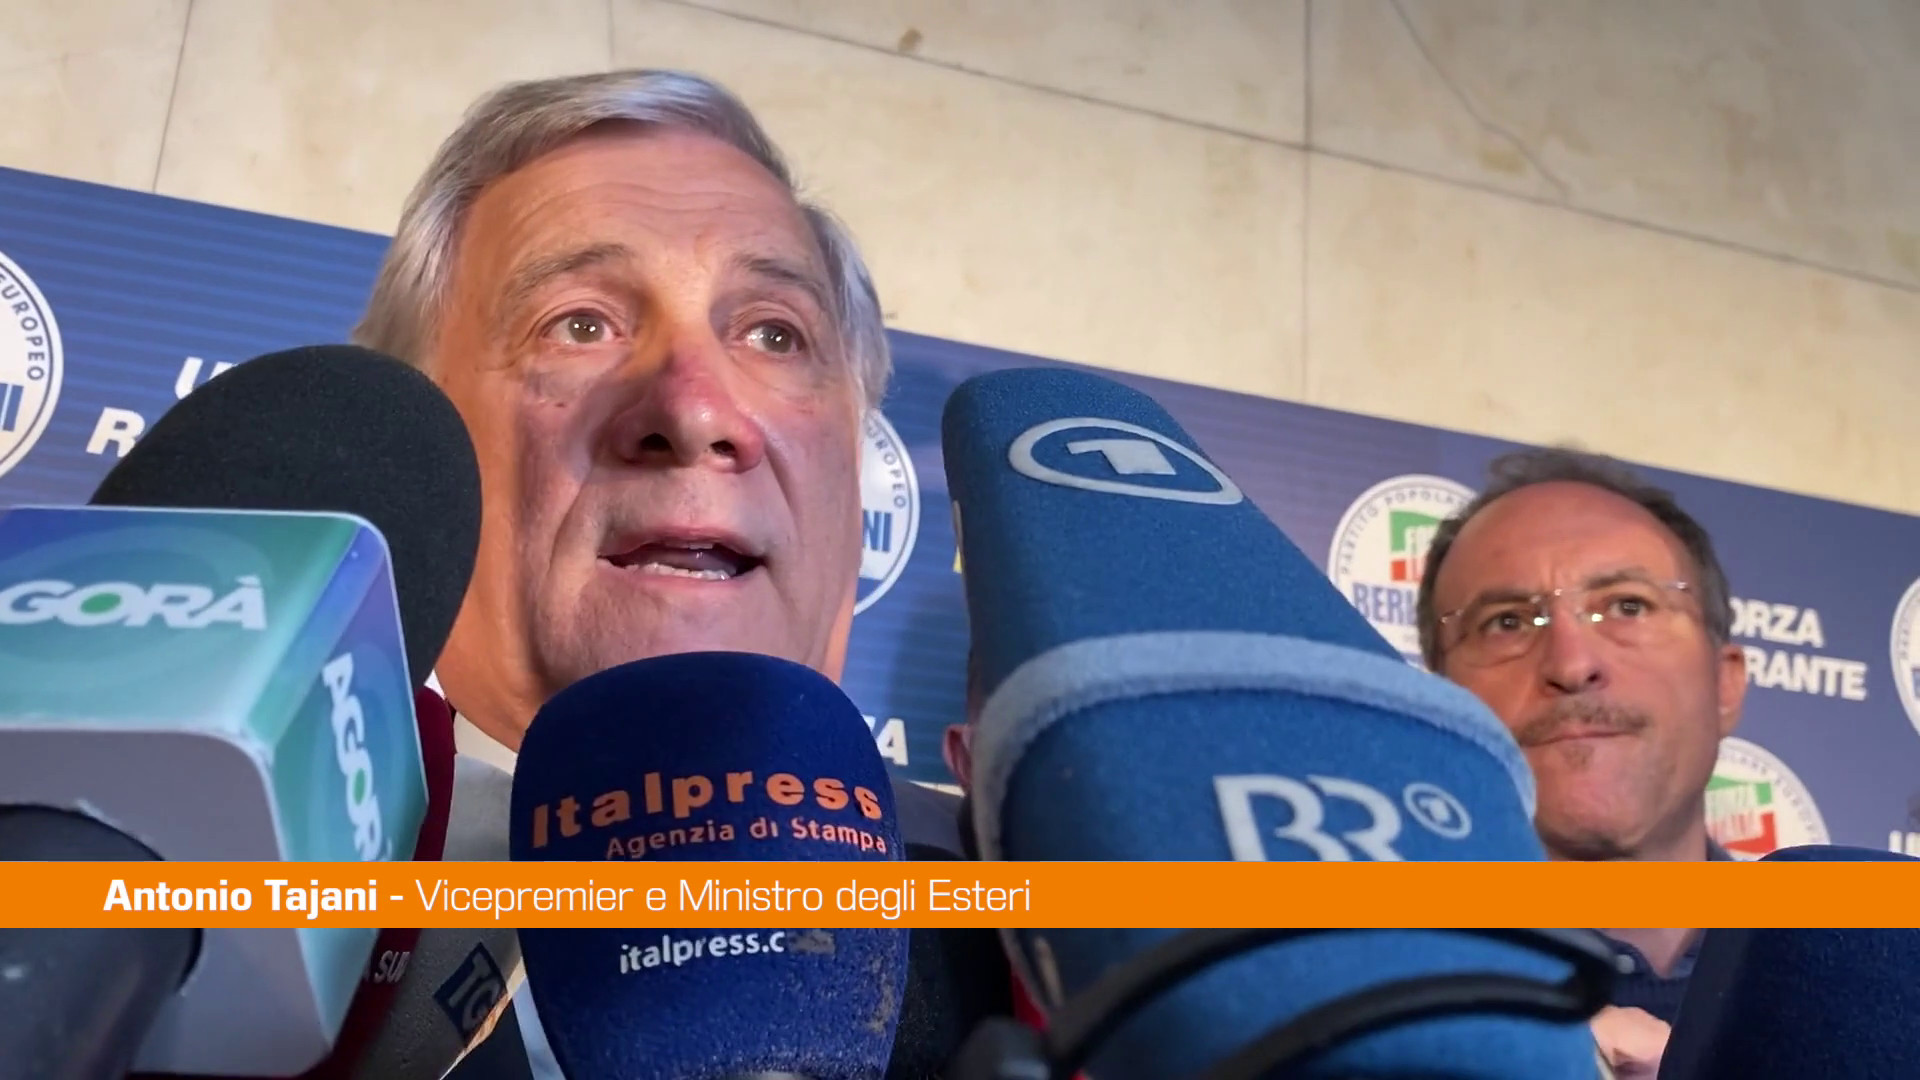 Tajani “Separazione delle carriere per garantire giusto processo”